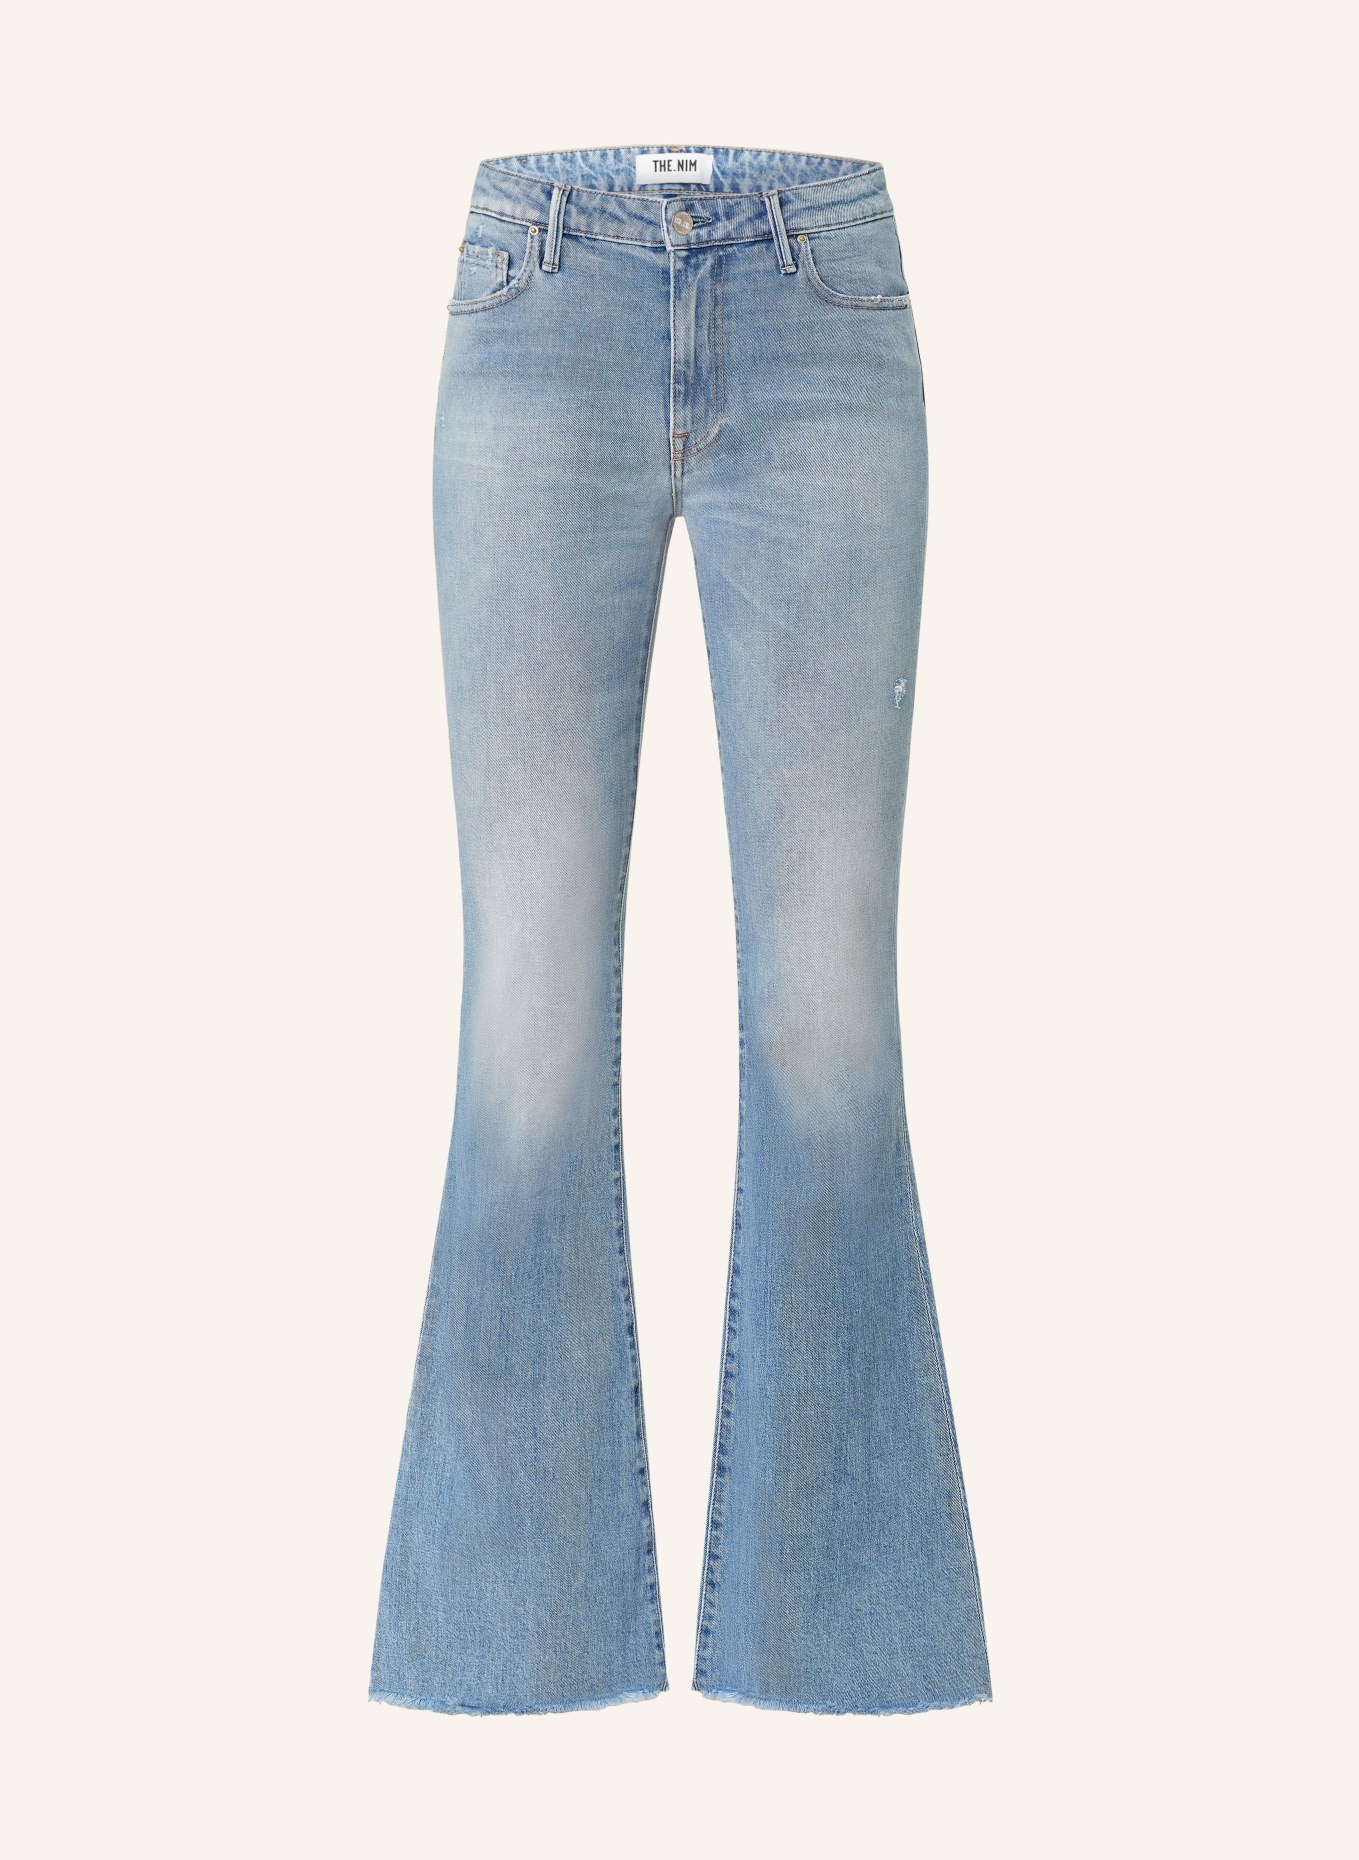 THE.NIM STANDARD Flared jeans KYLIE, Color: W837-VLG LIGHT BLUE (Image 1)